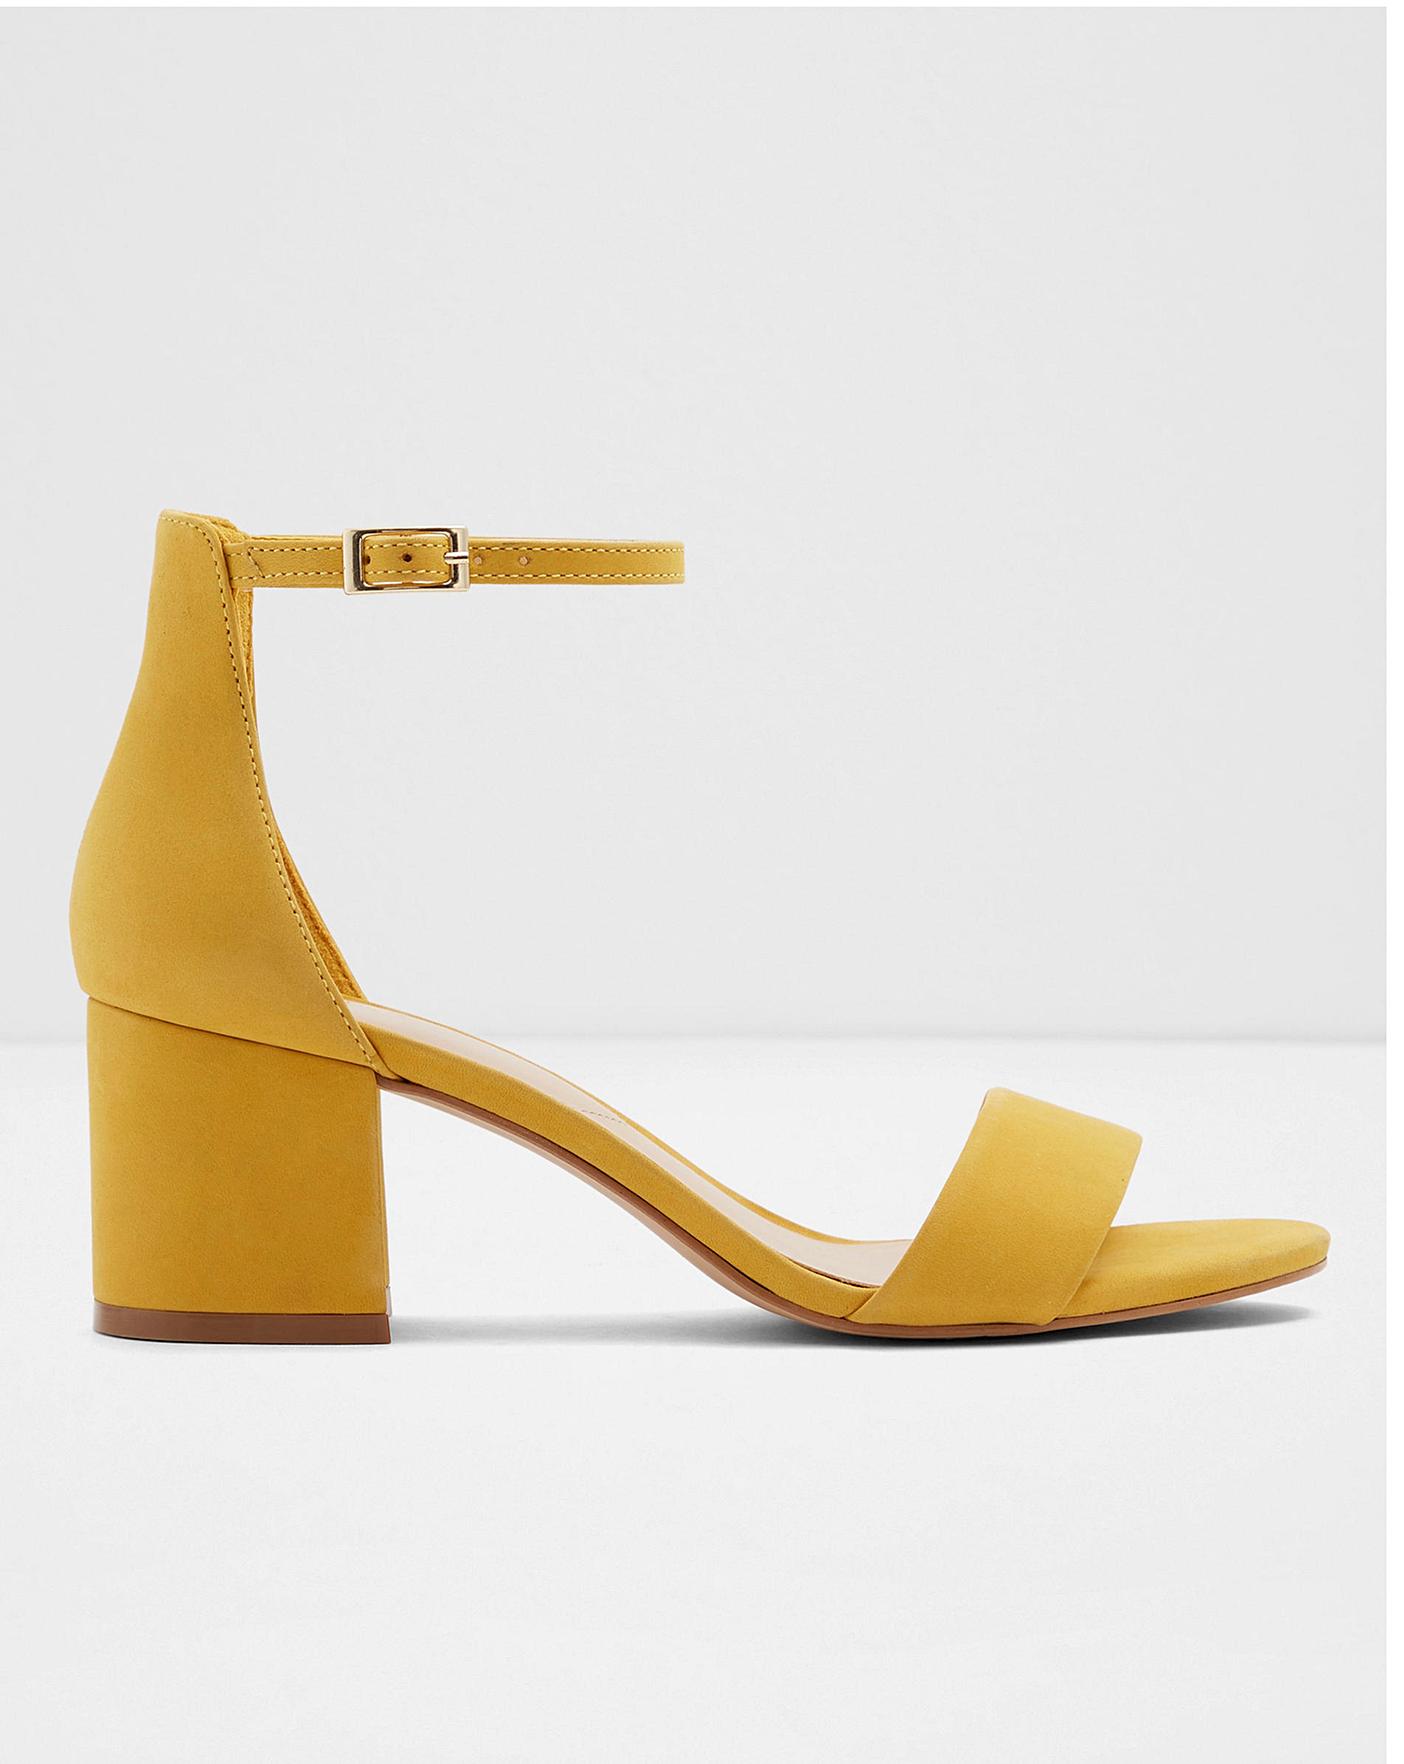 wide width block heels